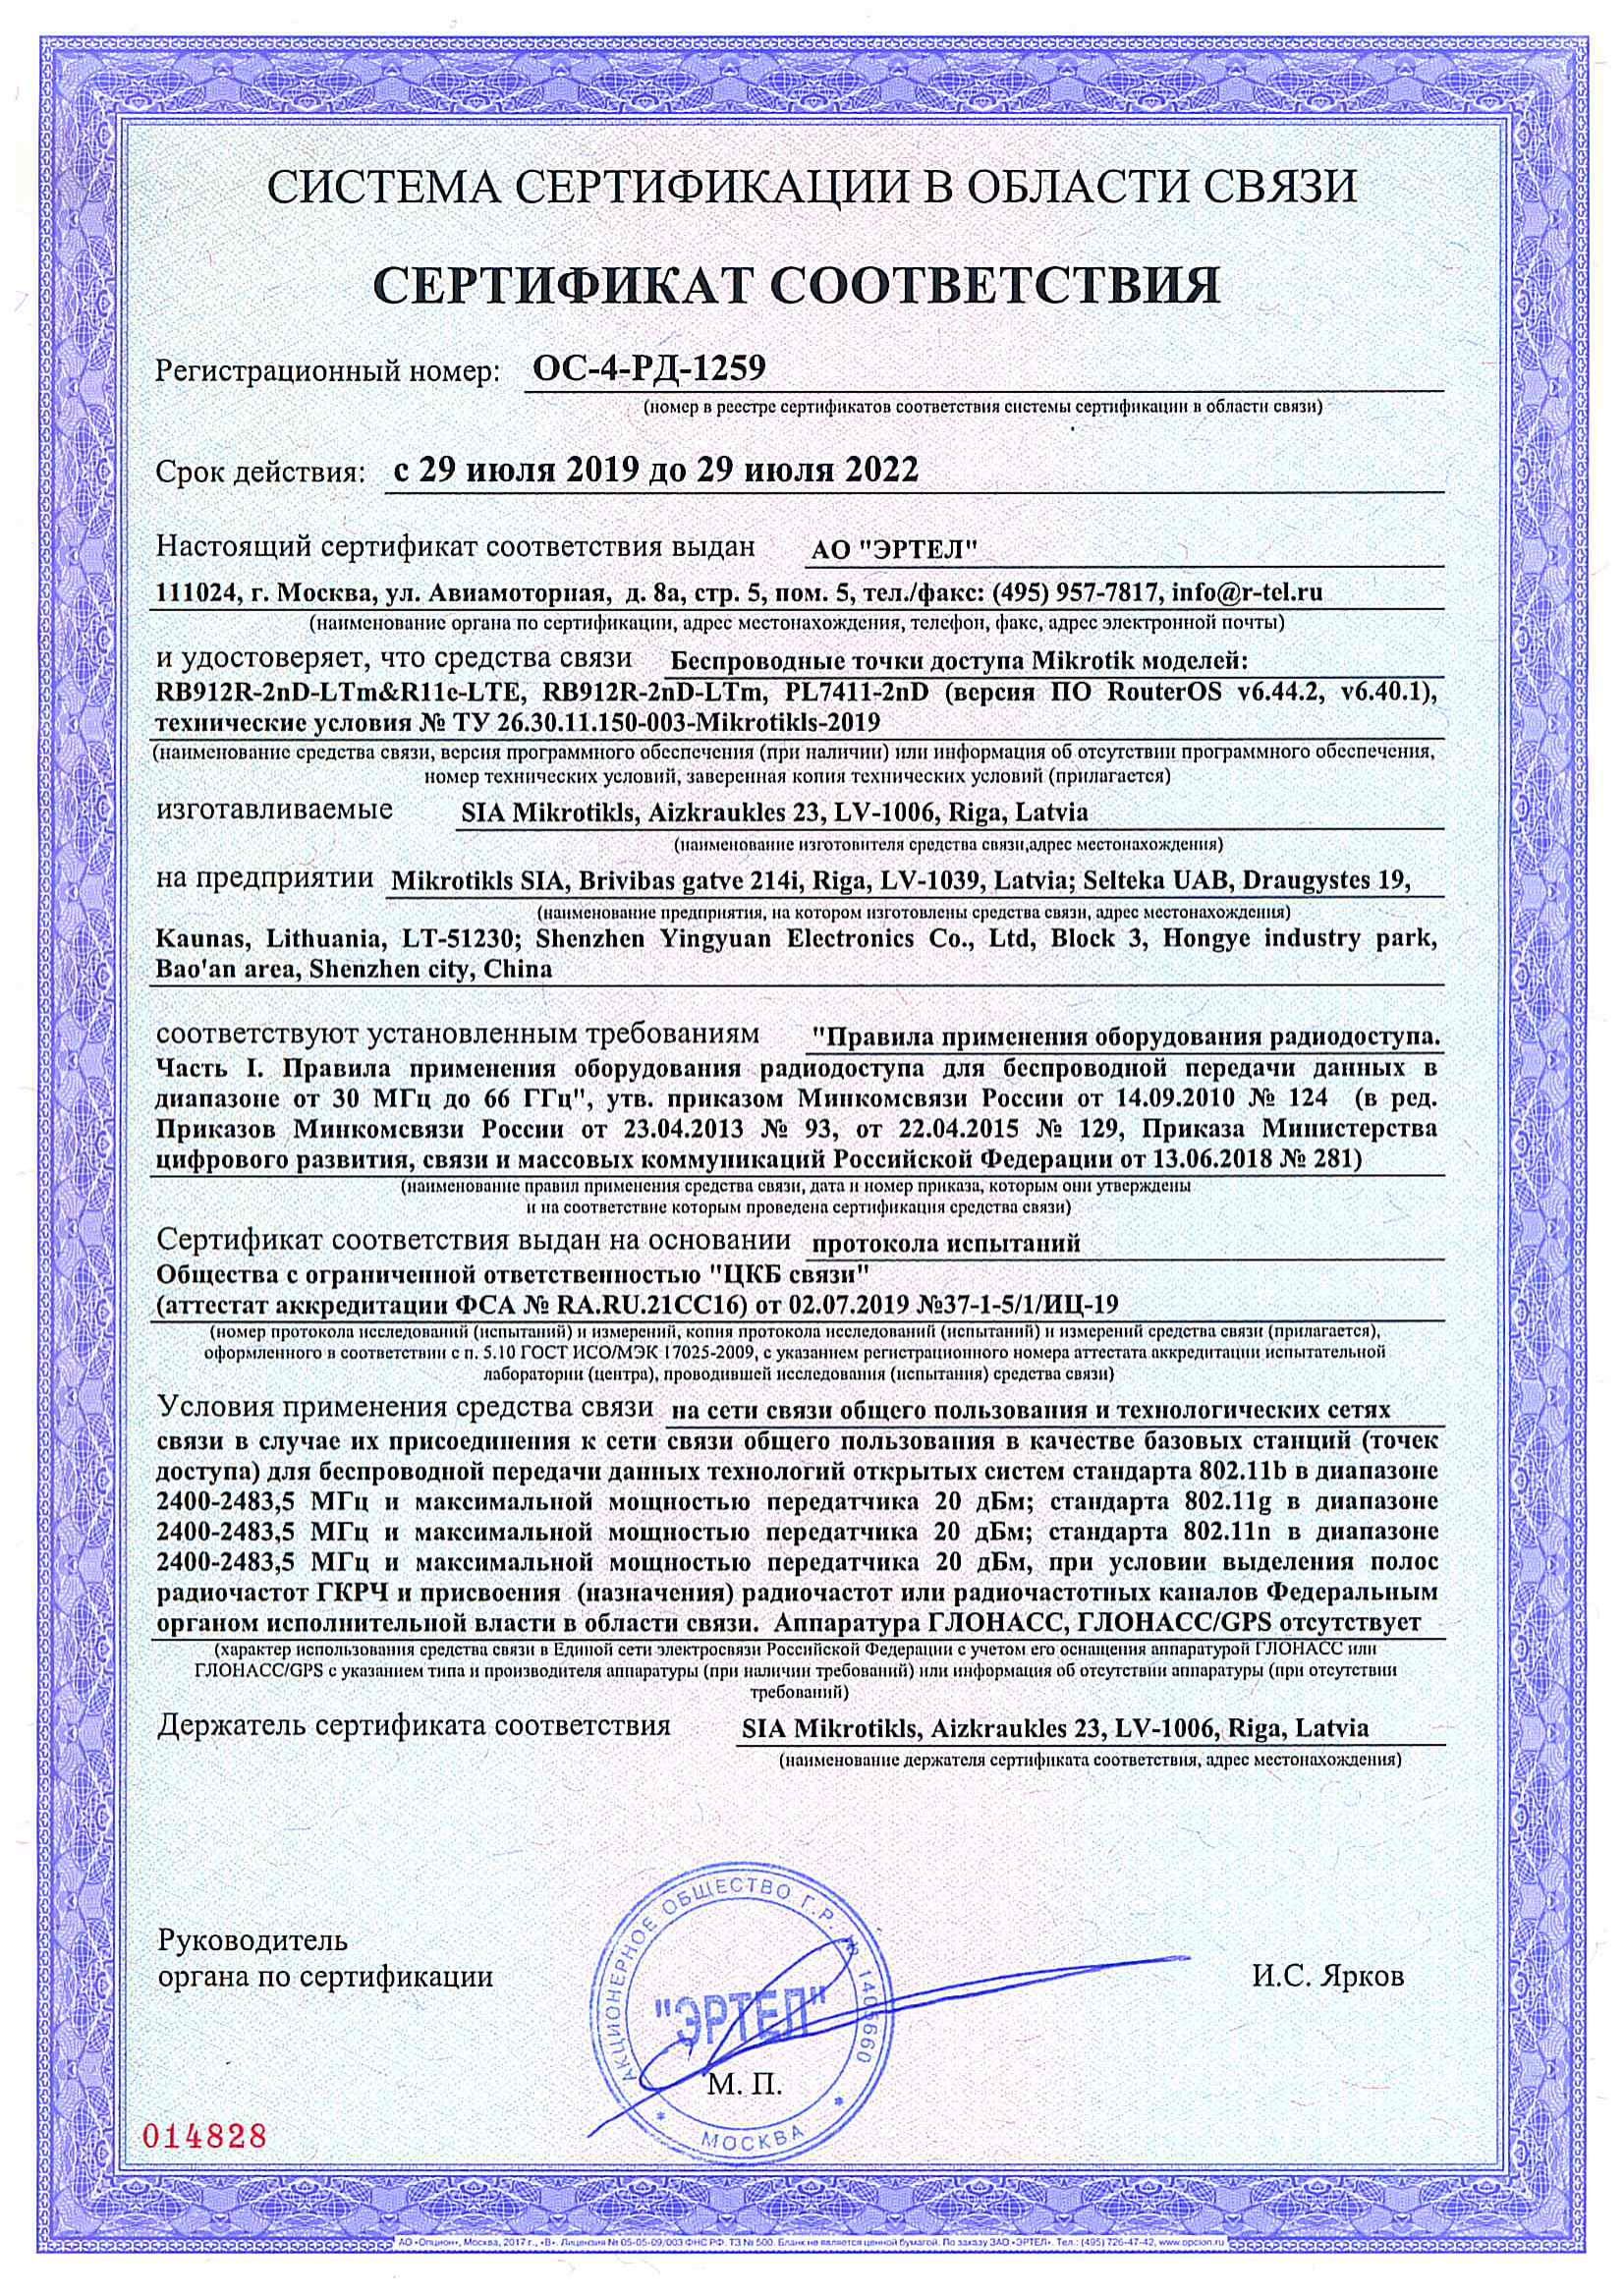 Сертификат соответствия в области связи ОС-4-РД-1259